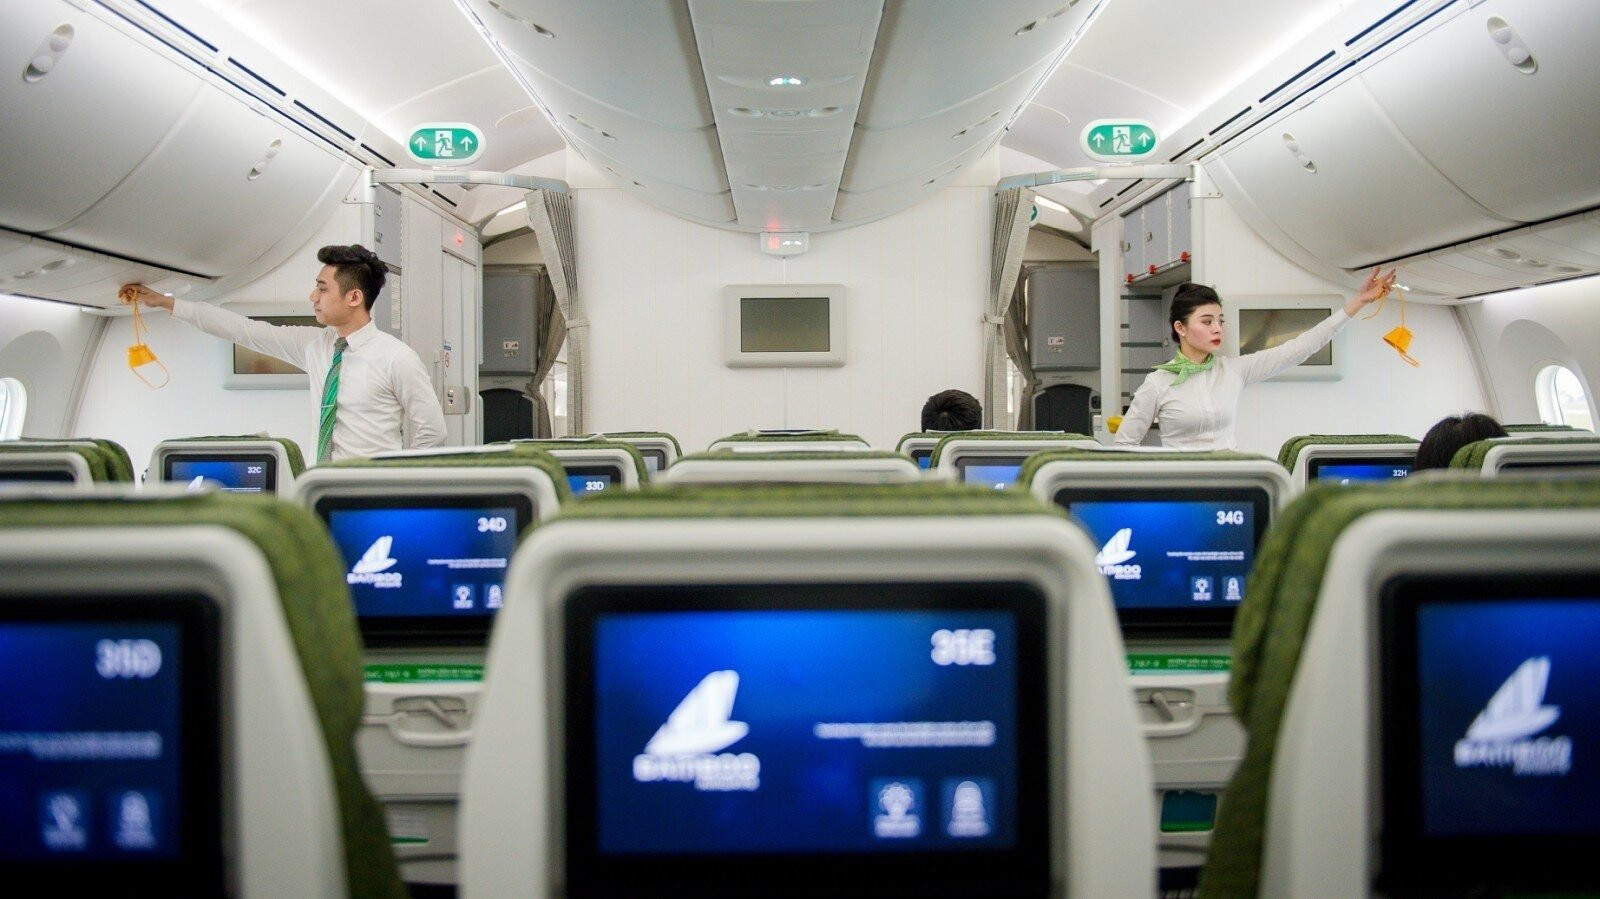 Khi đi máy bay, hành khách cần tuân thủ tuyệt đối các quy tắc an toàn